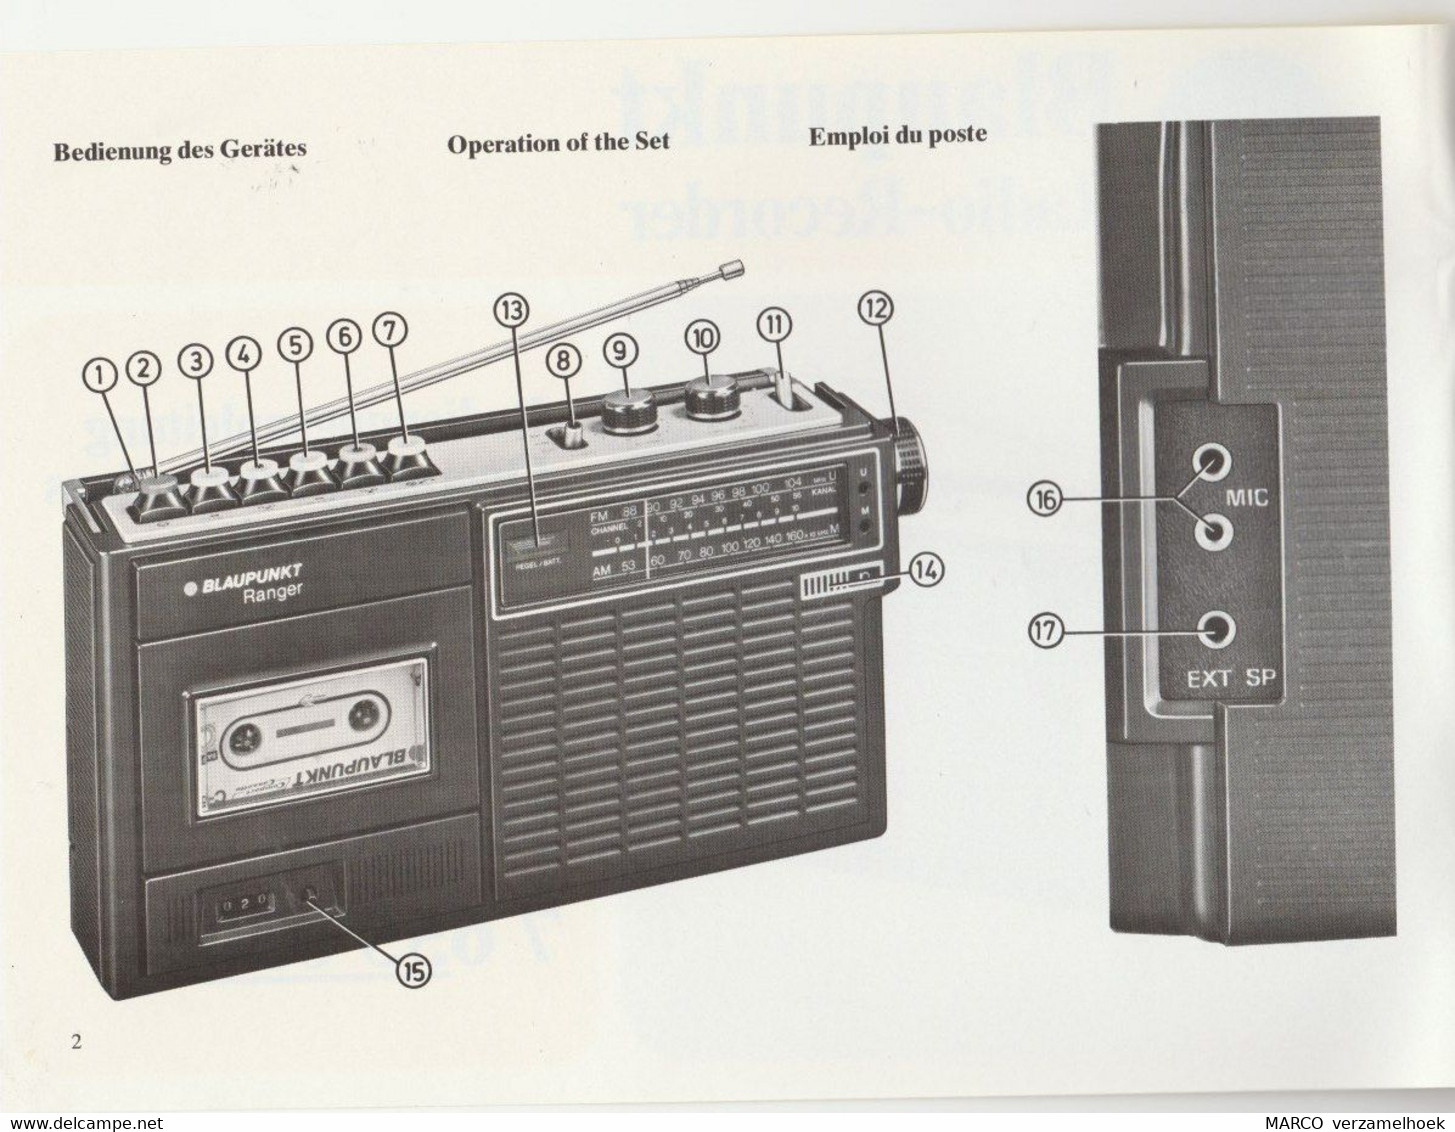 Handleiding-user Manual BLAUPUNKT Werke Gmbh Hildesheim (D) Ranger Radio-recorder 7 655 030 - Literature & Schemes